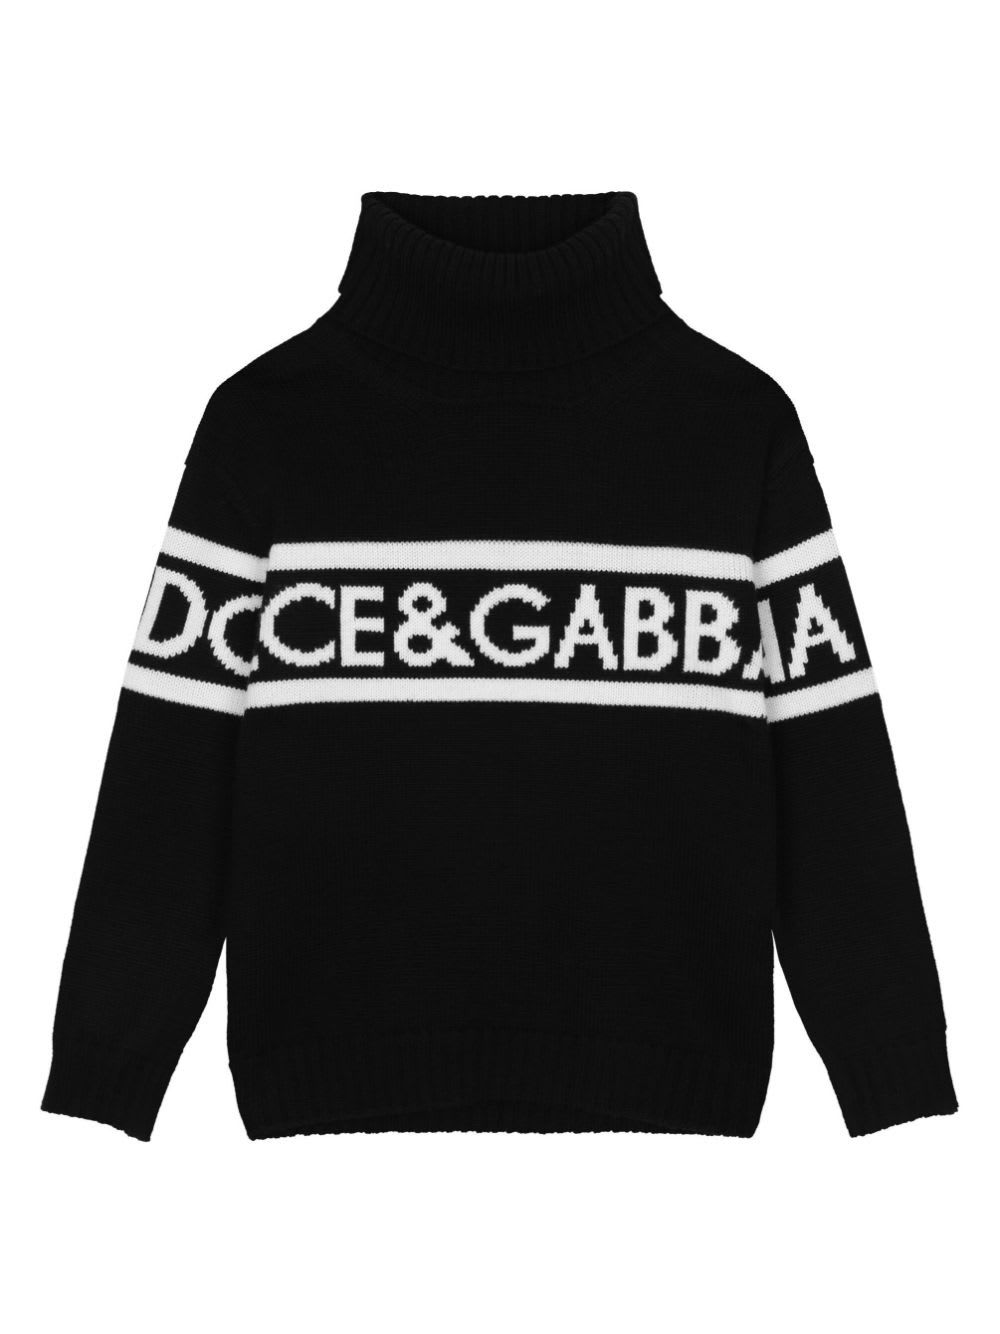 Dolce & Gabbana Kids'  Pullover Nero Tema Dna In Maglia Di Lana Vergine Bambino